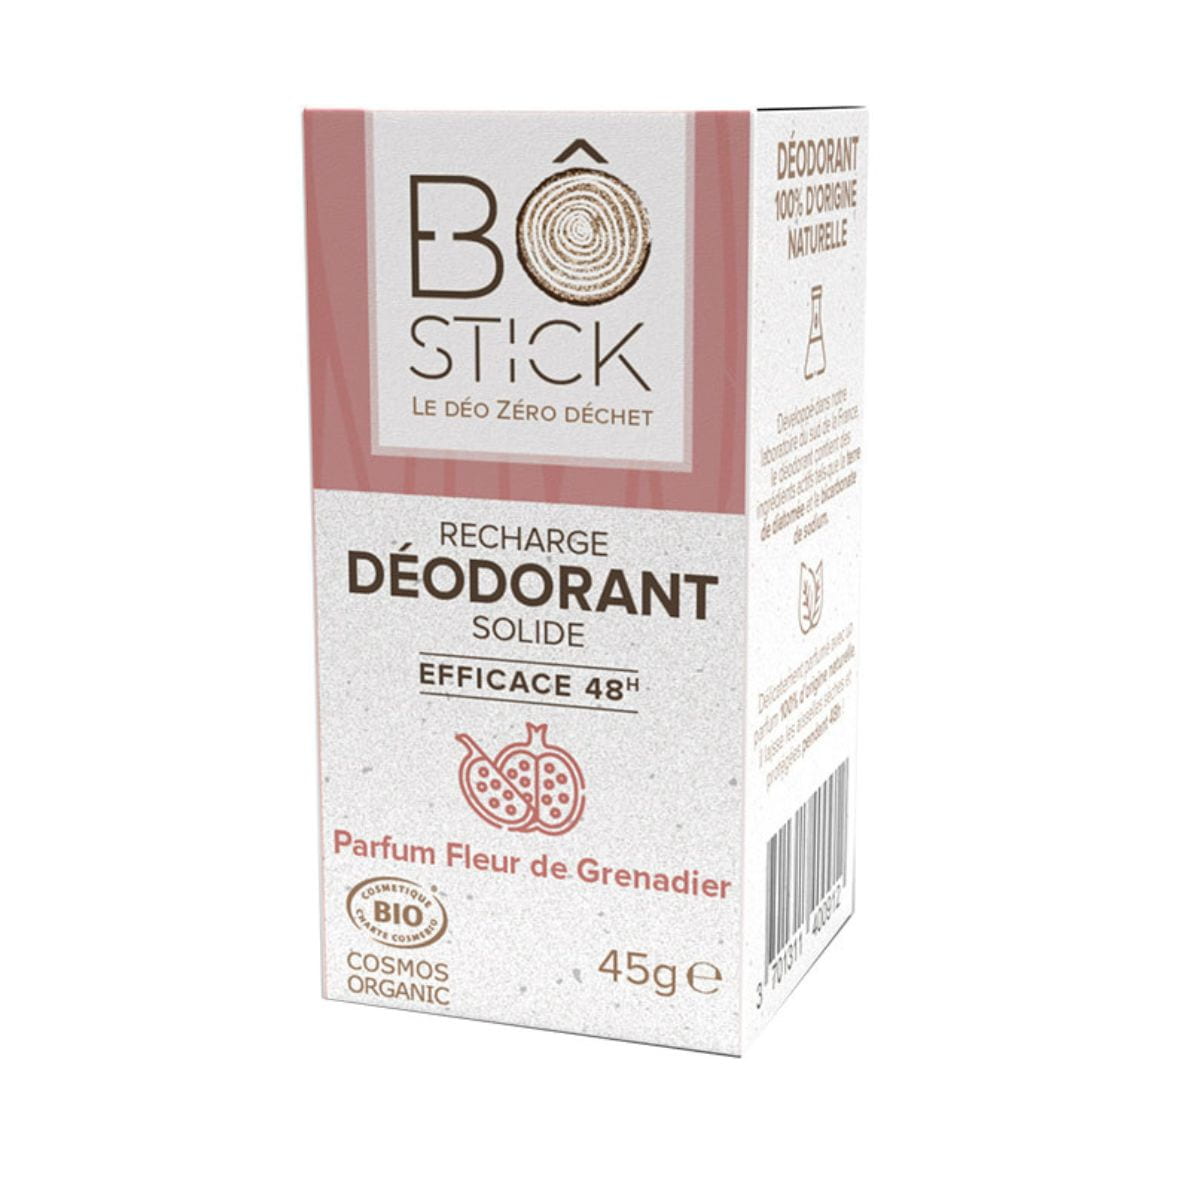 Recambio de Desodorante Bo Stick Flor de Granada